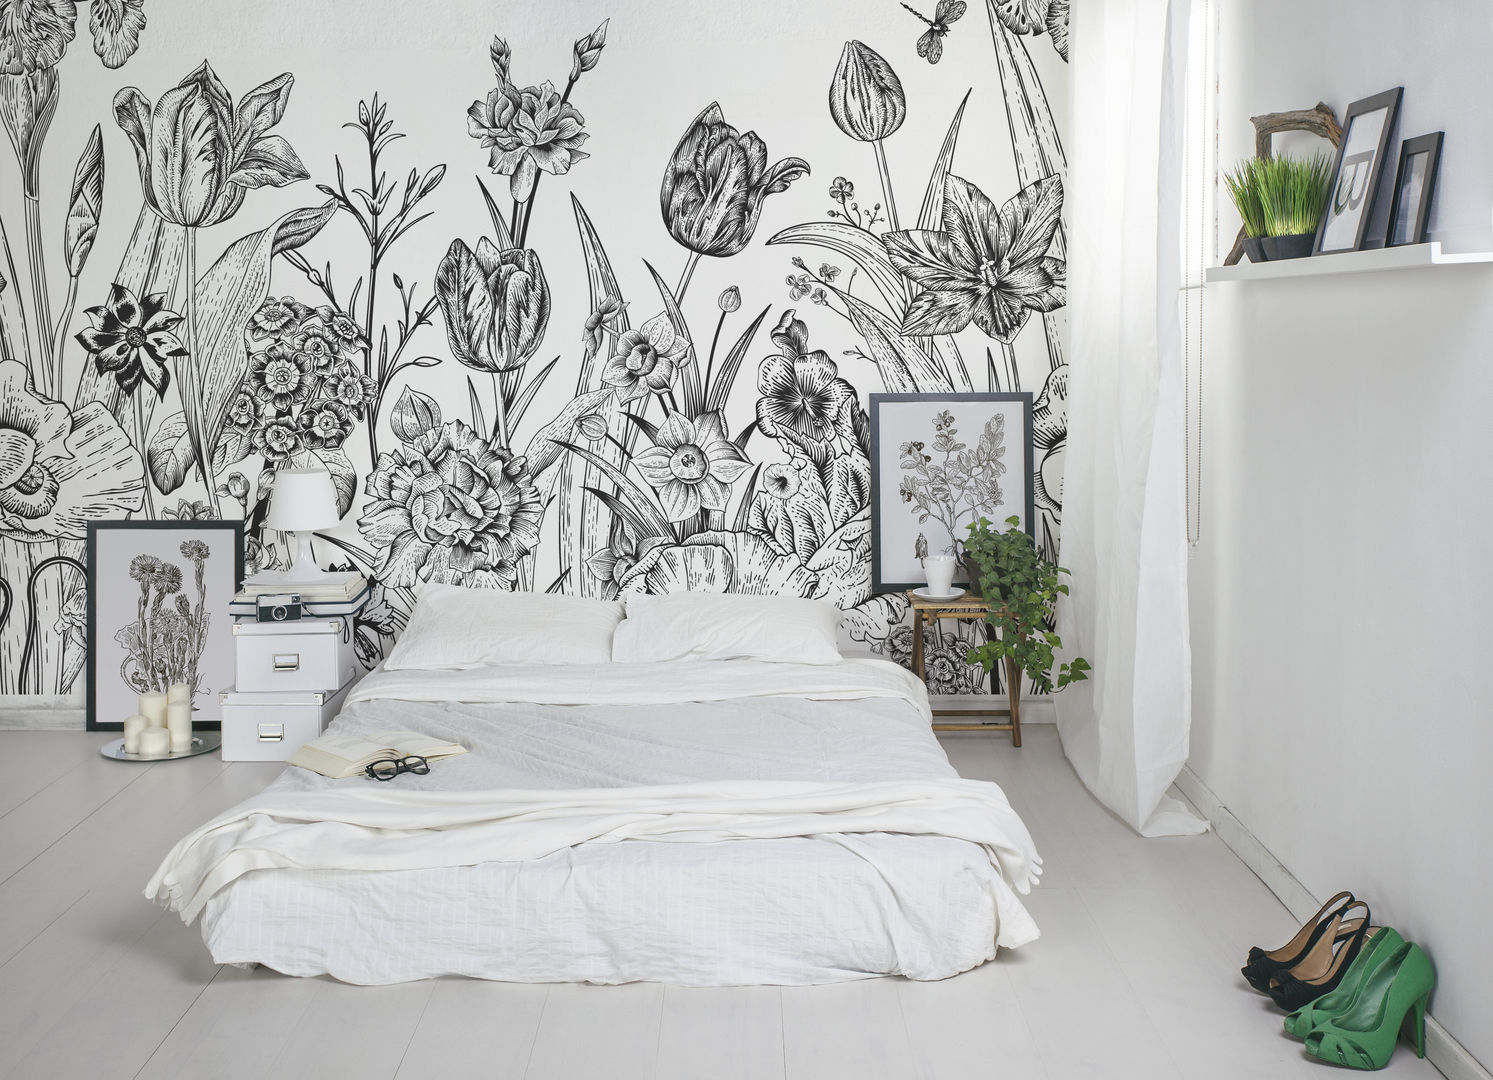 Spring Flowers Pixers Rustic style bedroom flowers,wall mural,wallpaper